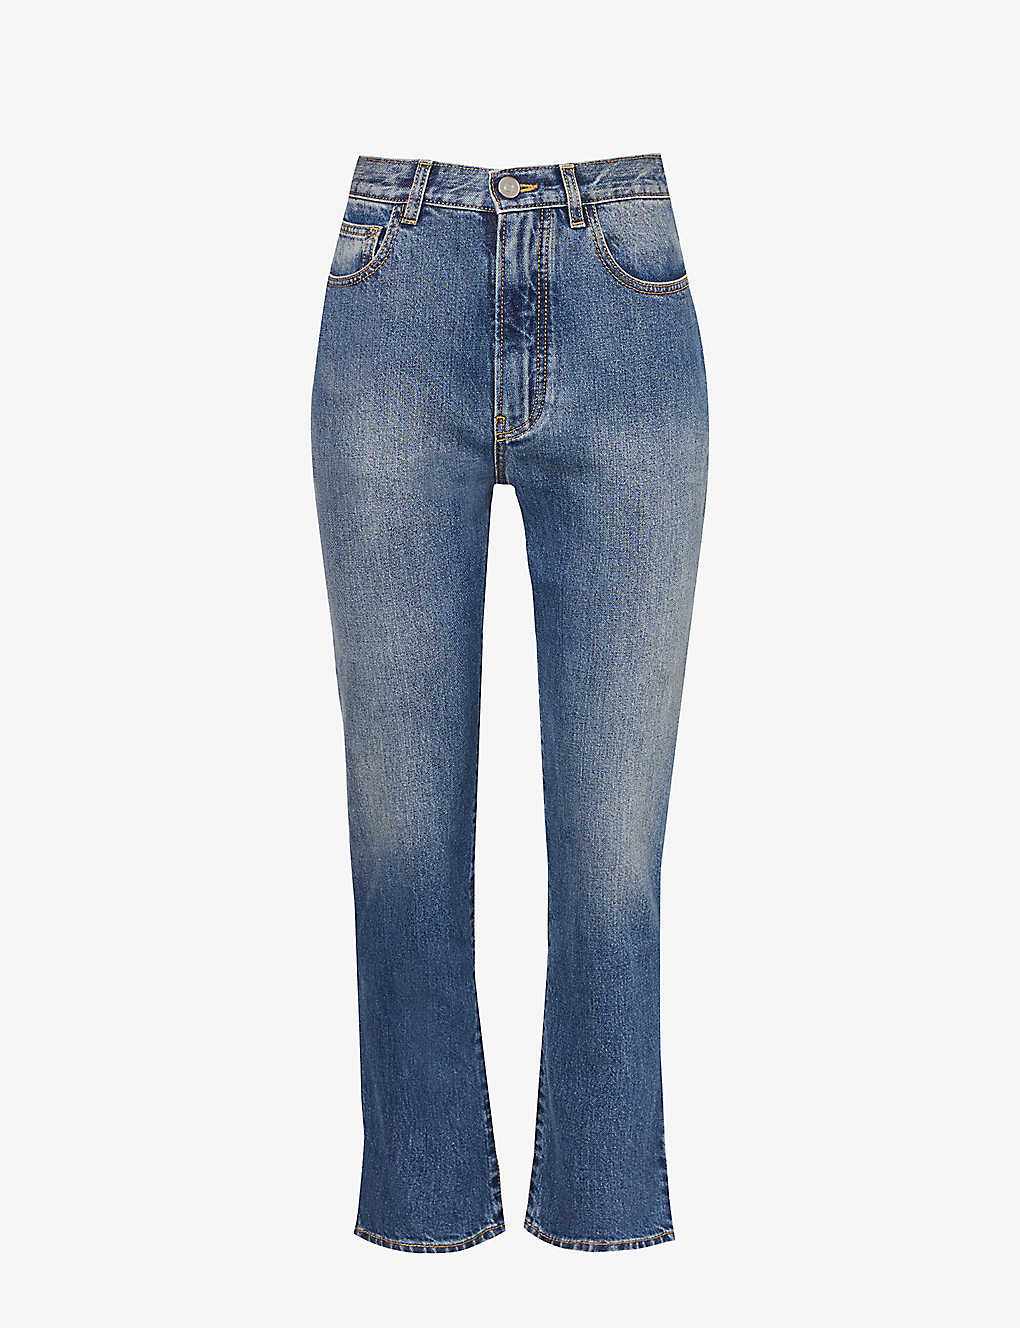 Shop Alaïa Alaia Women's Bleu Vintage Structured-waist Contrast-stitch Straight High-rise Jeans